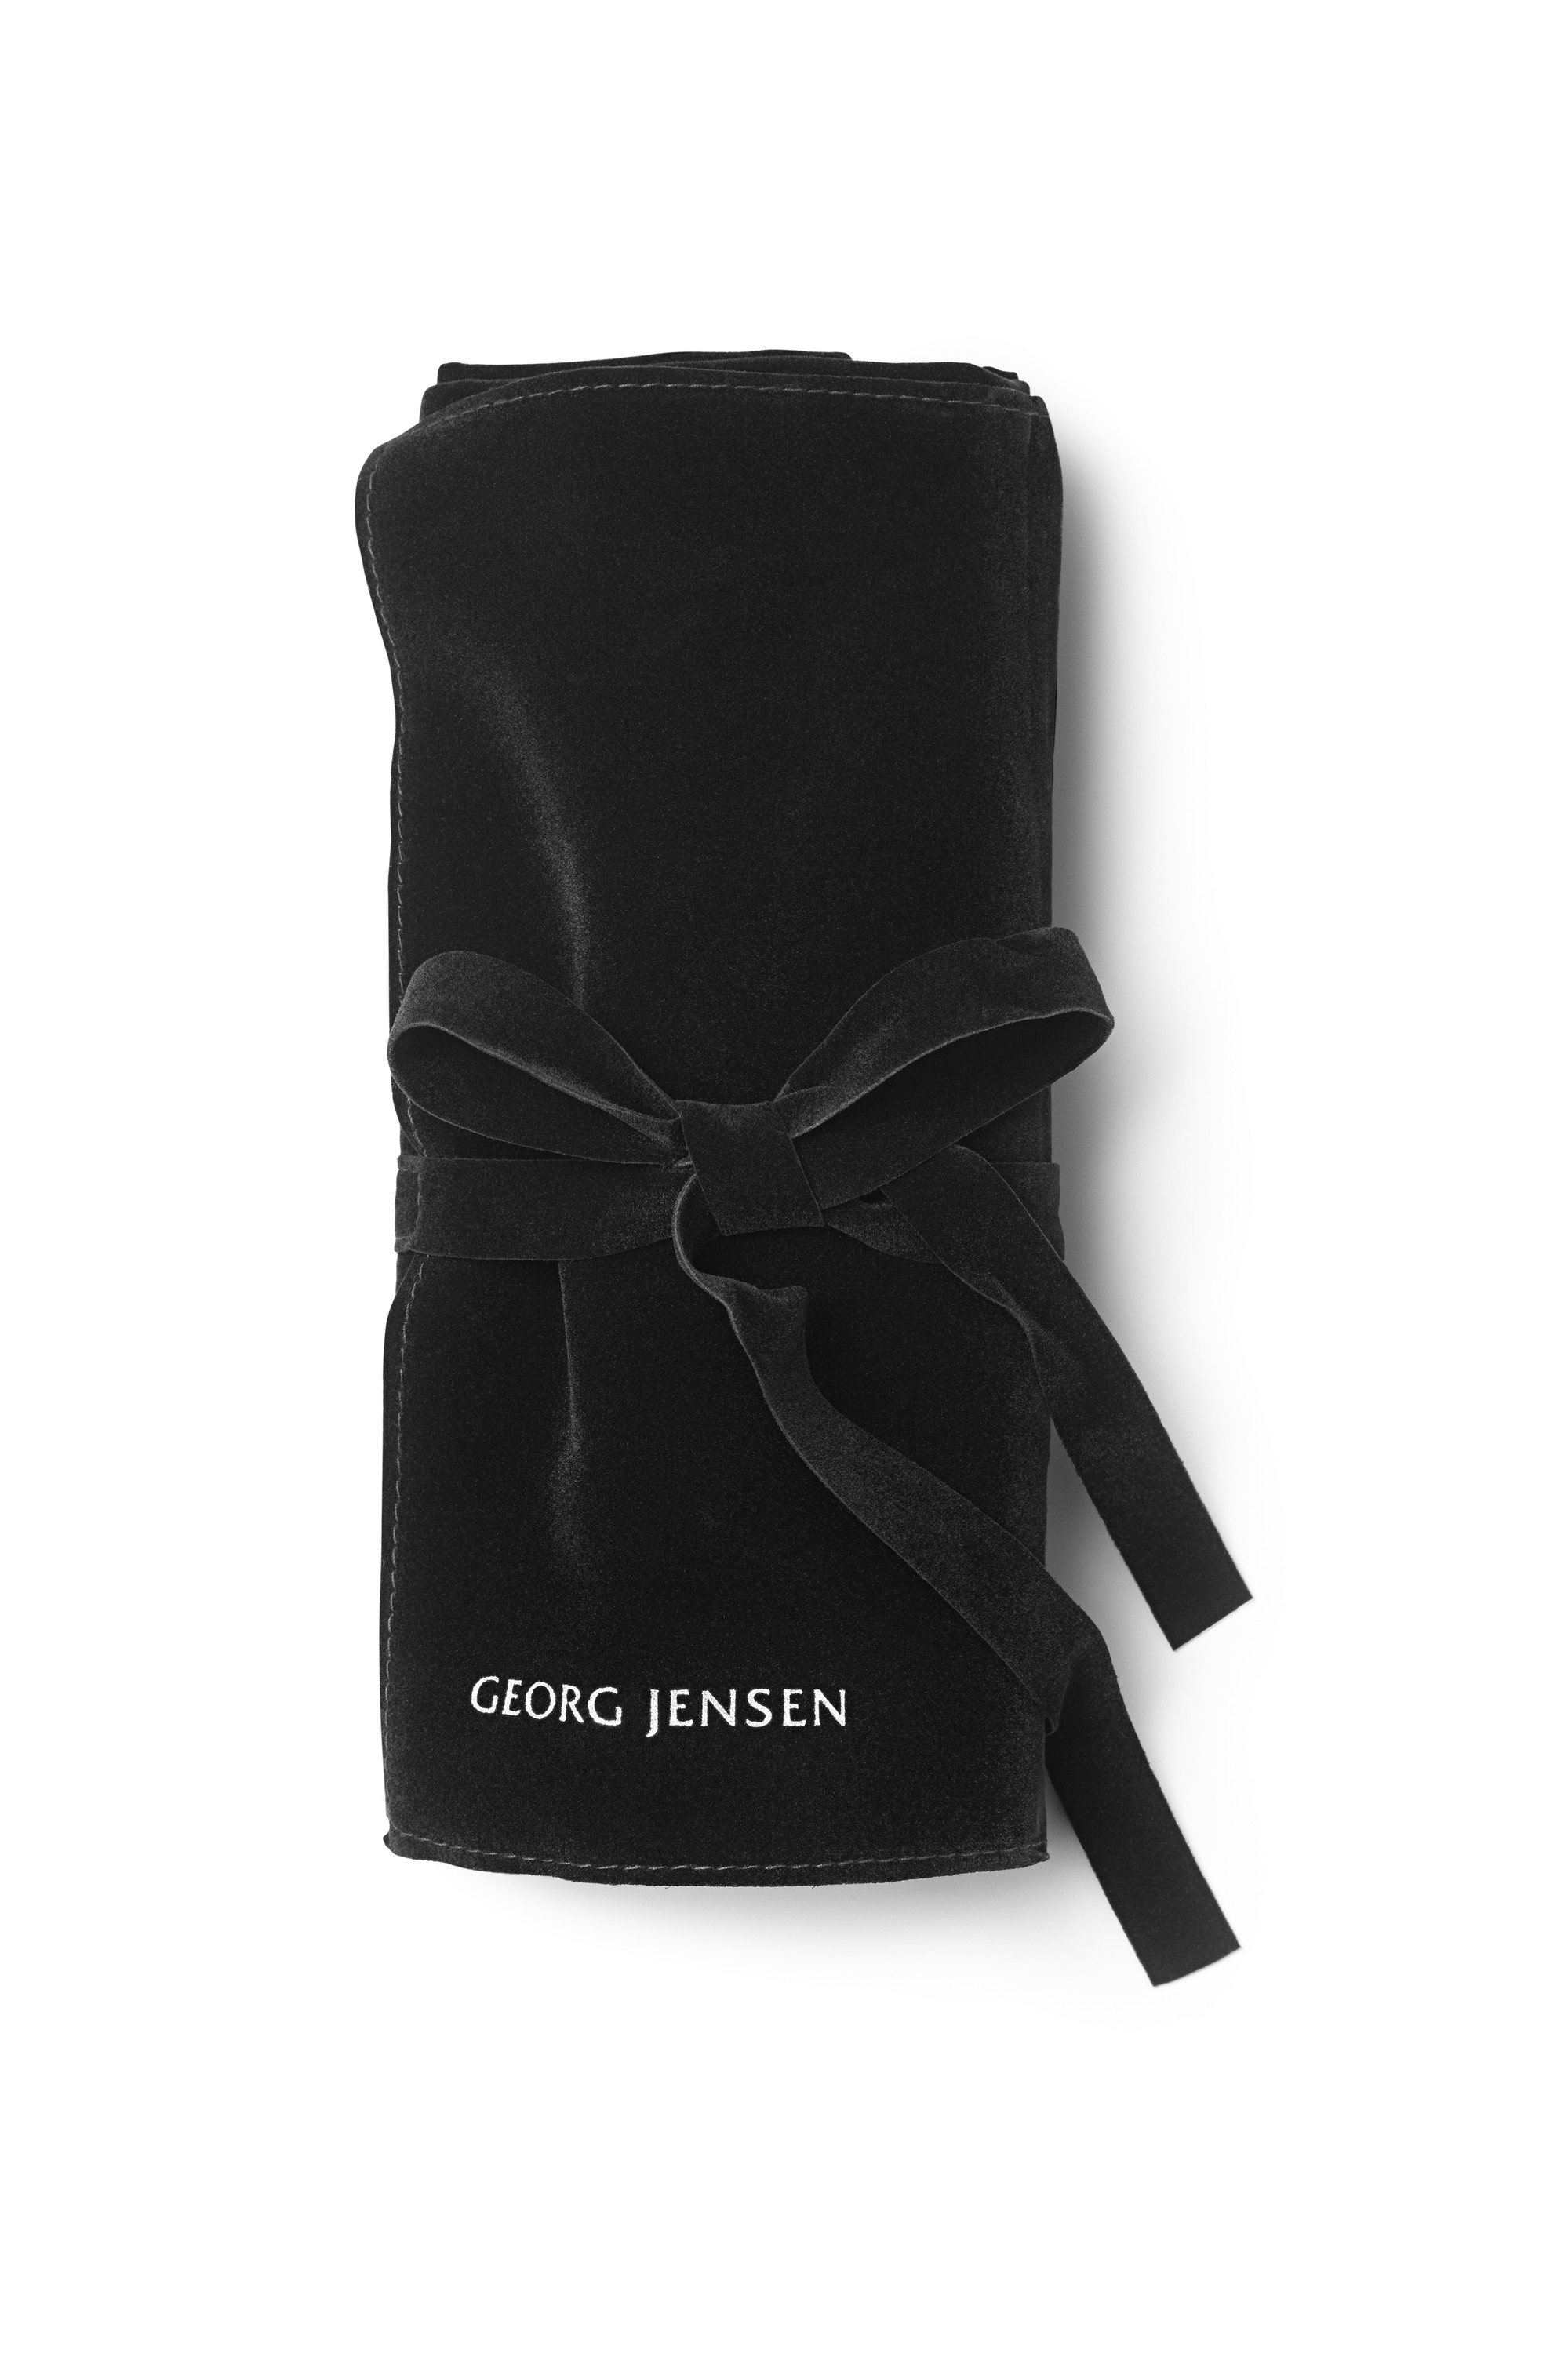 Georg Jensen bestikpose med 12 lommer